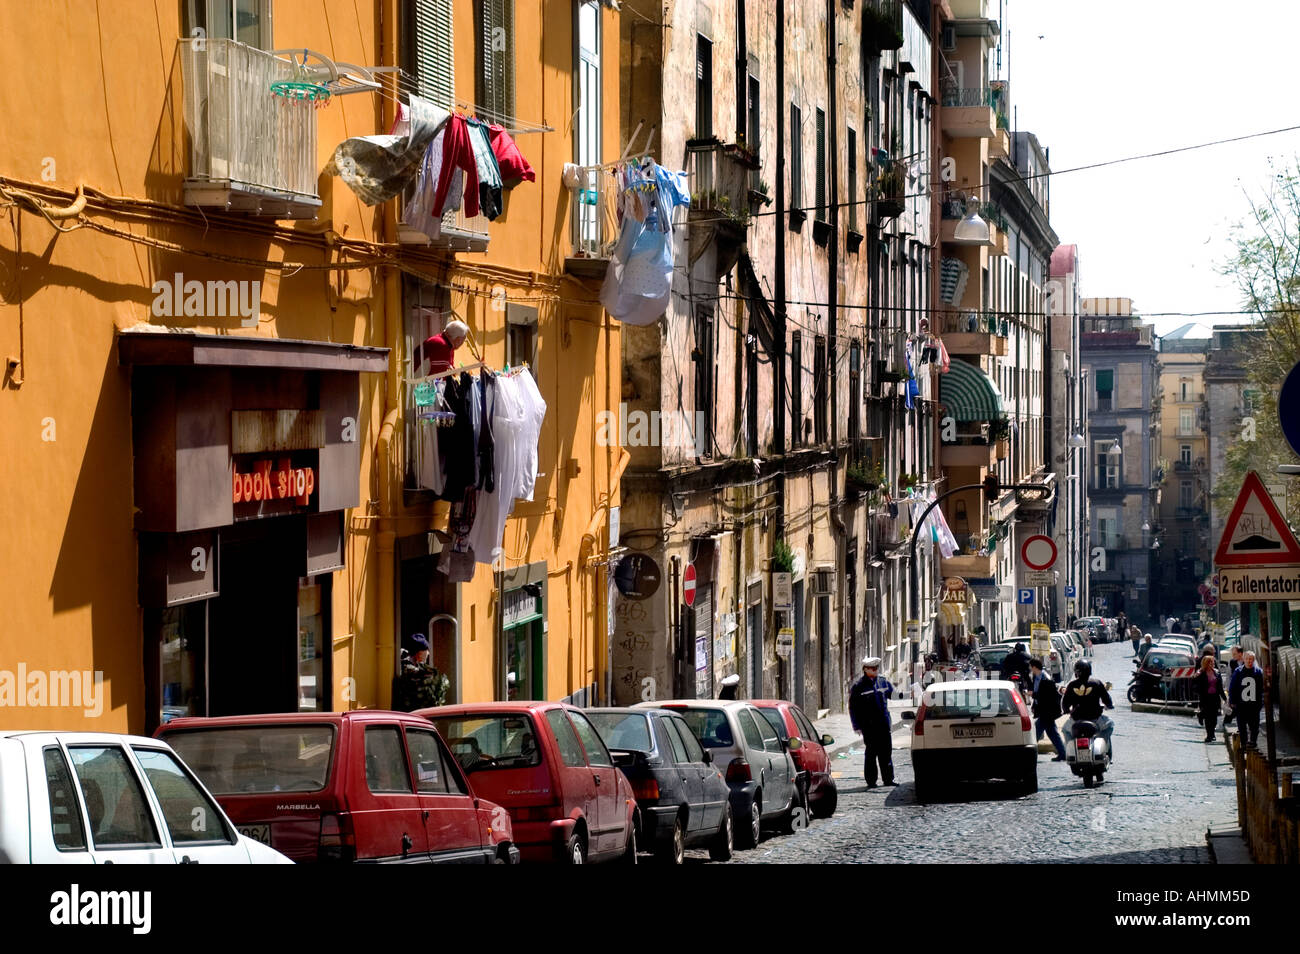 Toledo Naples Italy Italian ,People man woman town Stock Photo